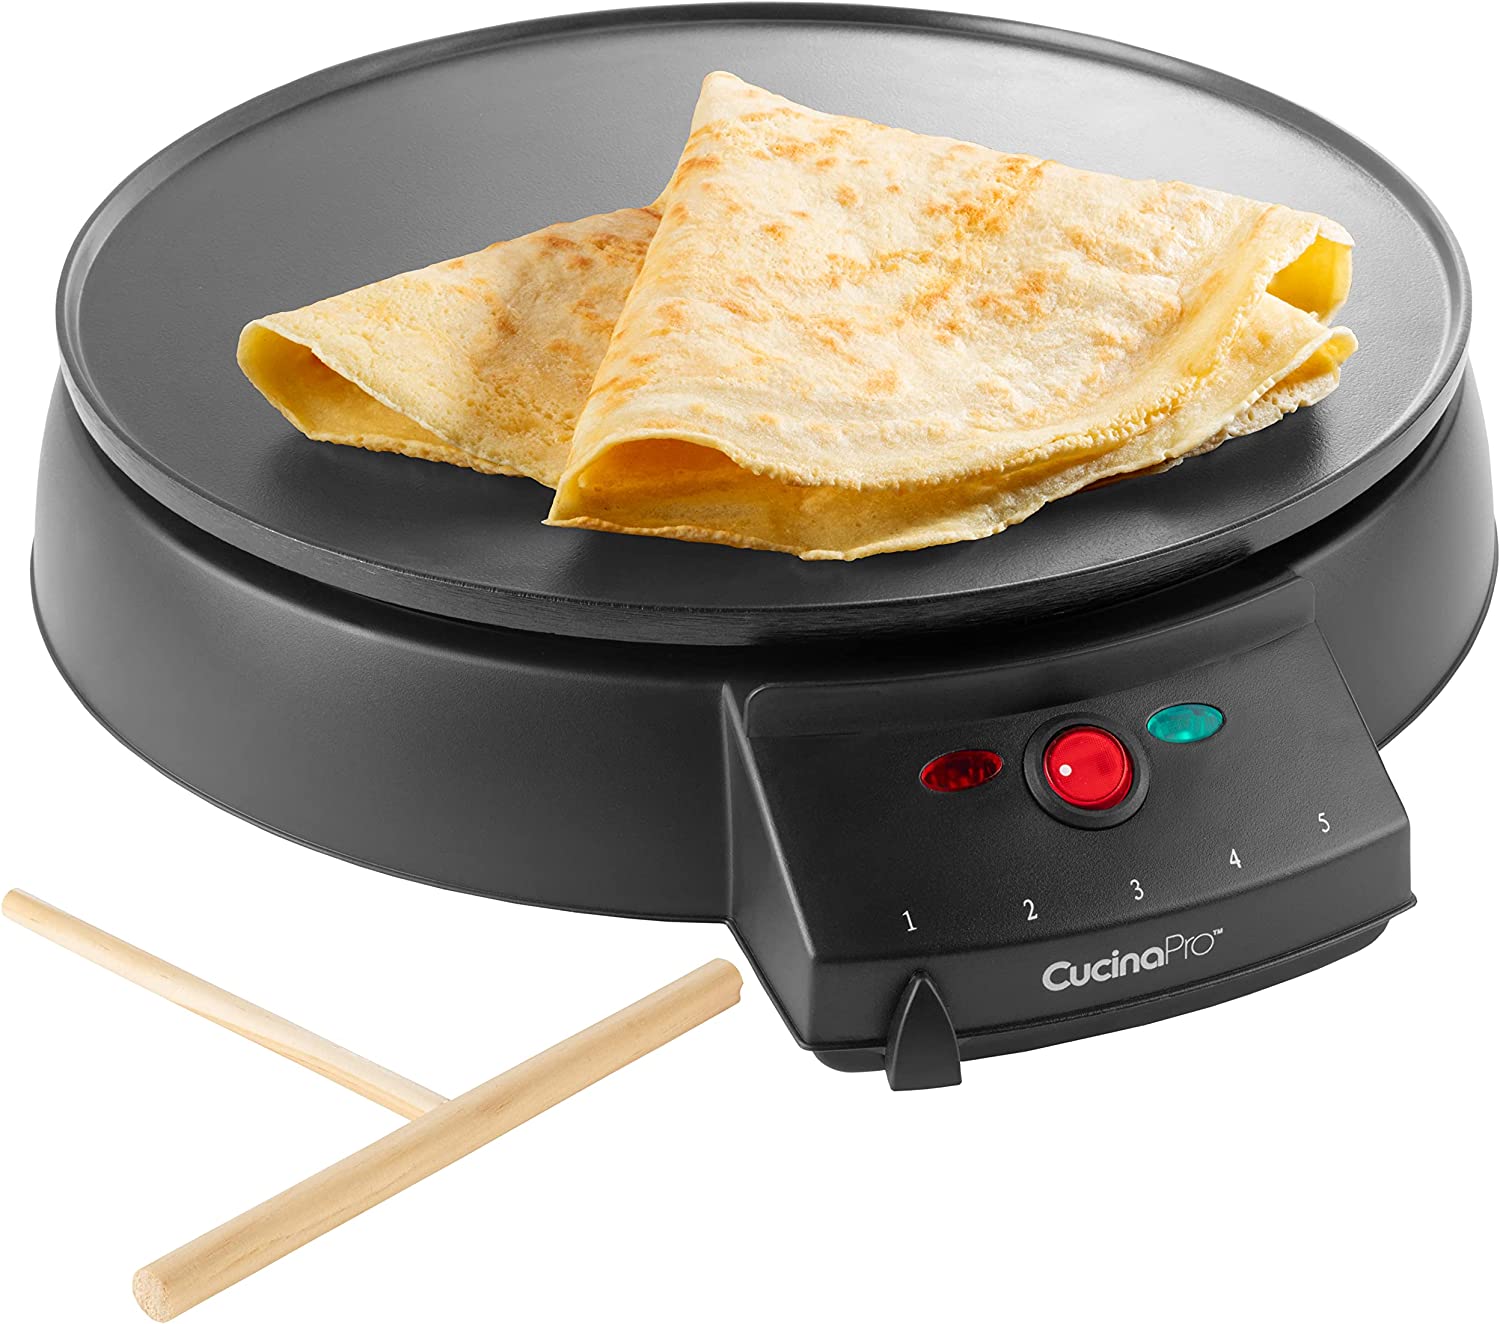 CucinaPro Griddle & Crepe Maker